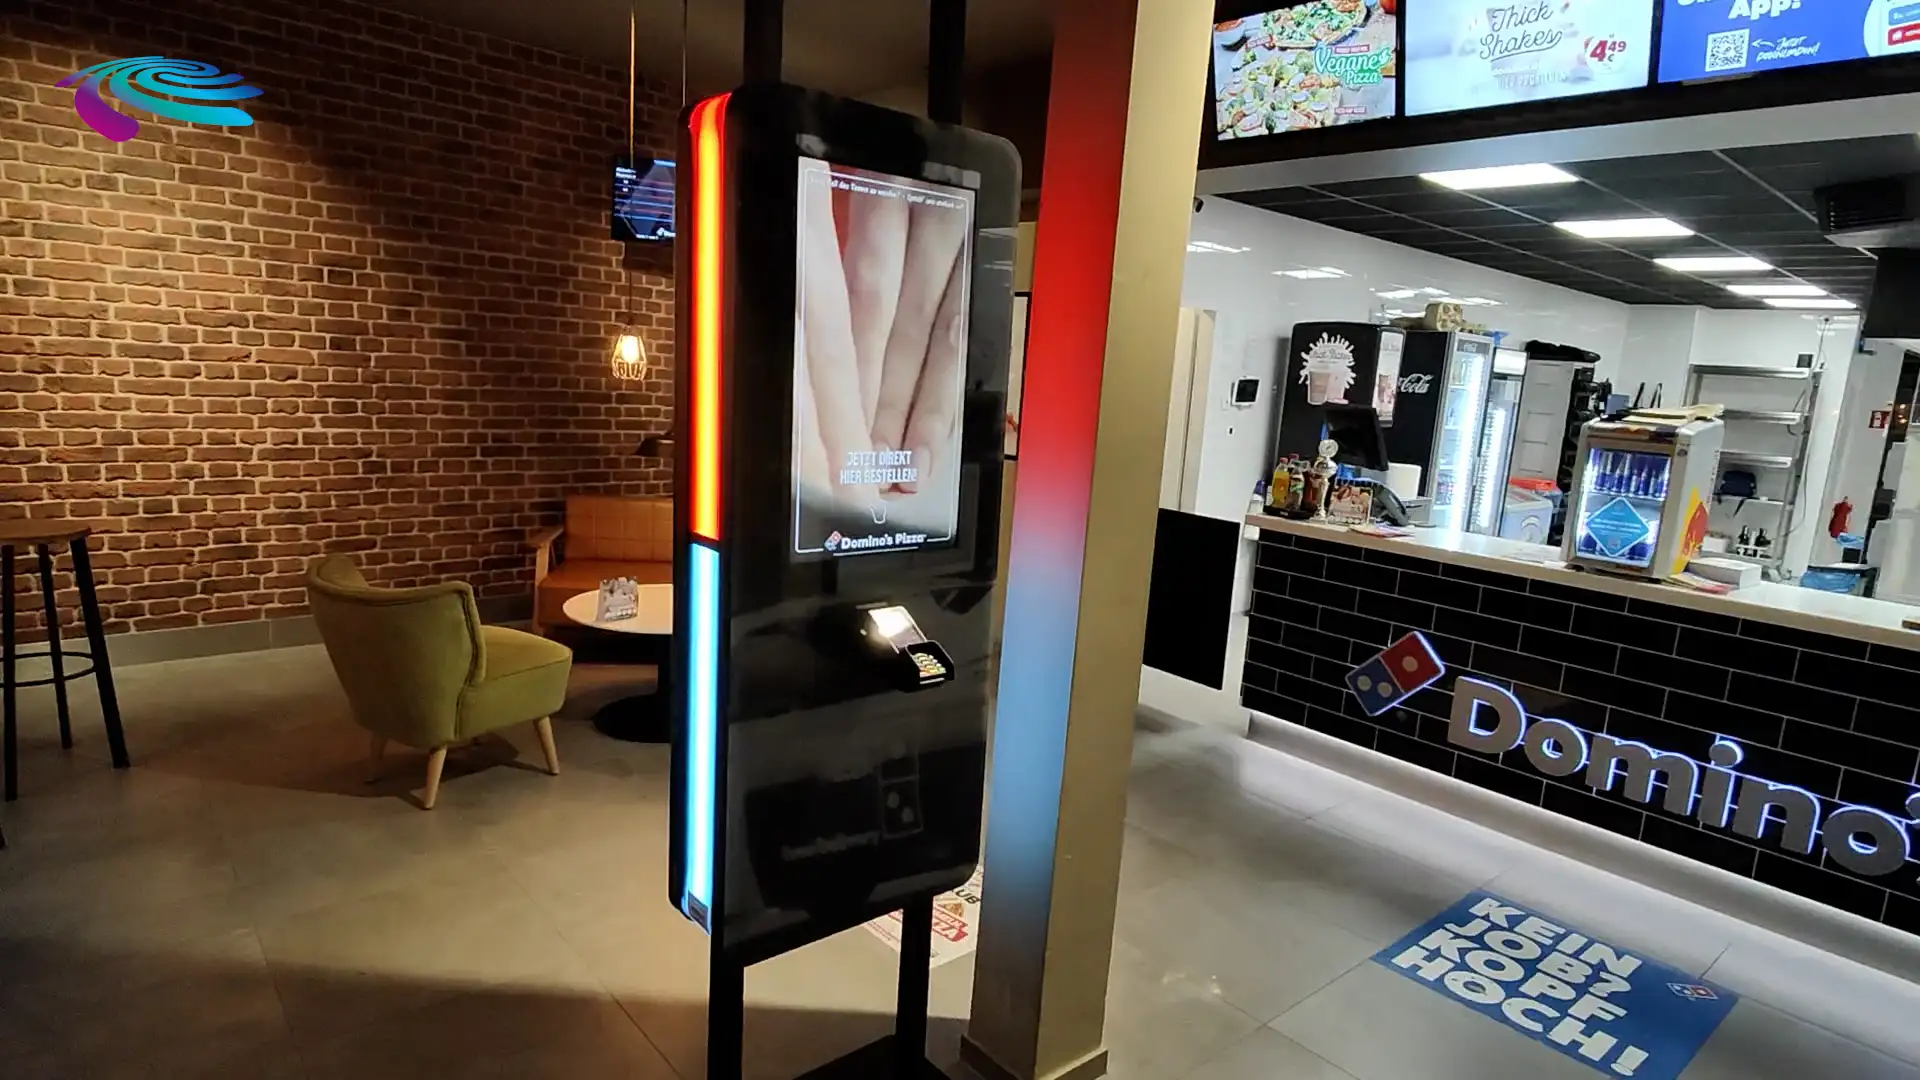 Prestop Self-Service Kiosk Domino's Pizza Installationsvideo